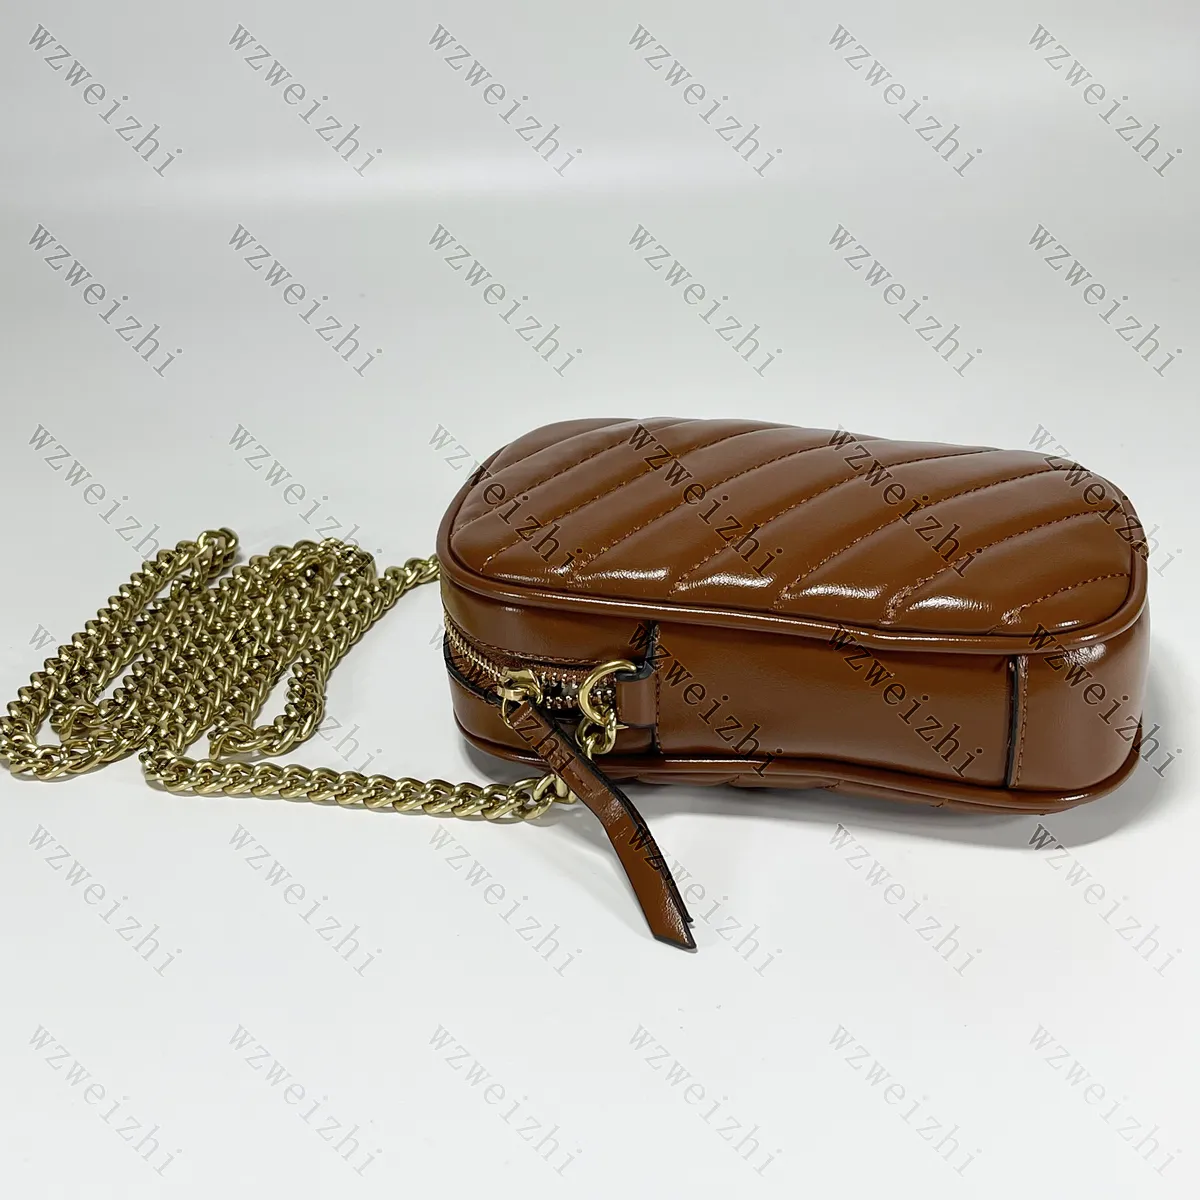 Ultimo stile Marmont Mini borsettatore borsette Coin Pulstre Gold Chain Offrote Borse Crossbody Pacchetto di telefonia mobile 10 5x17x5cm303a